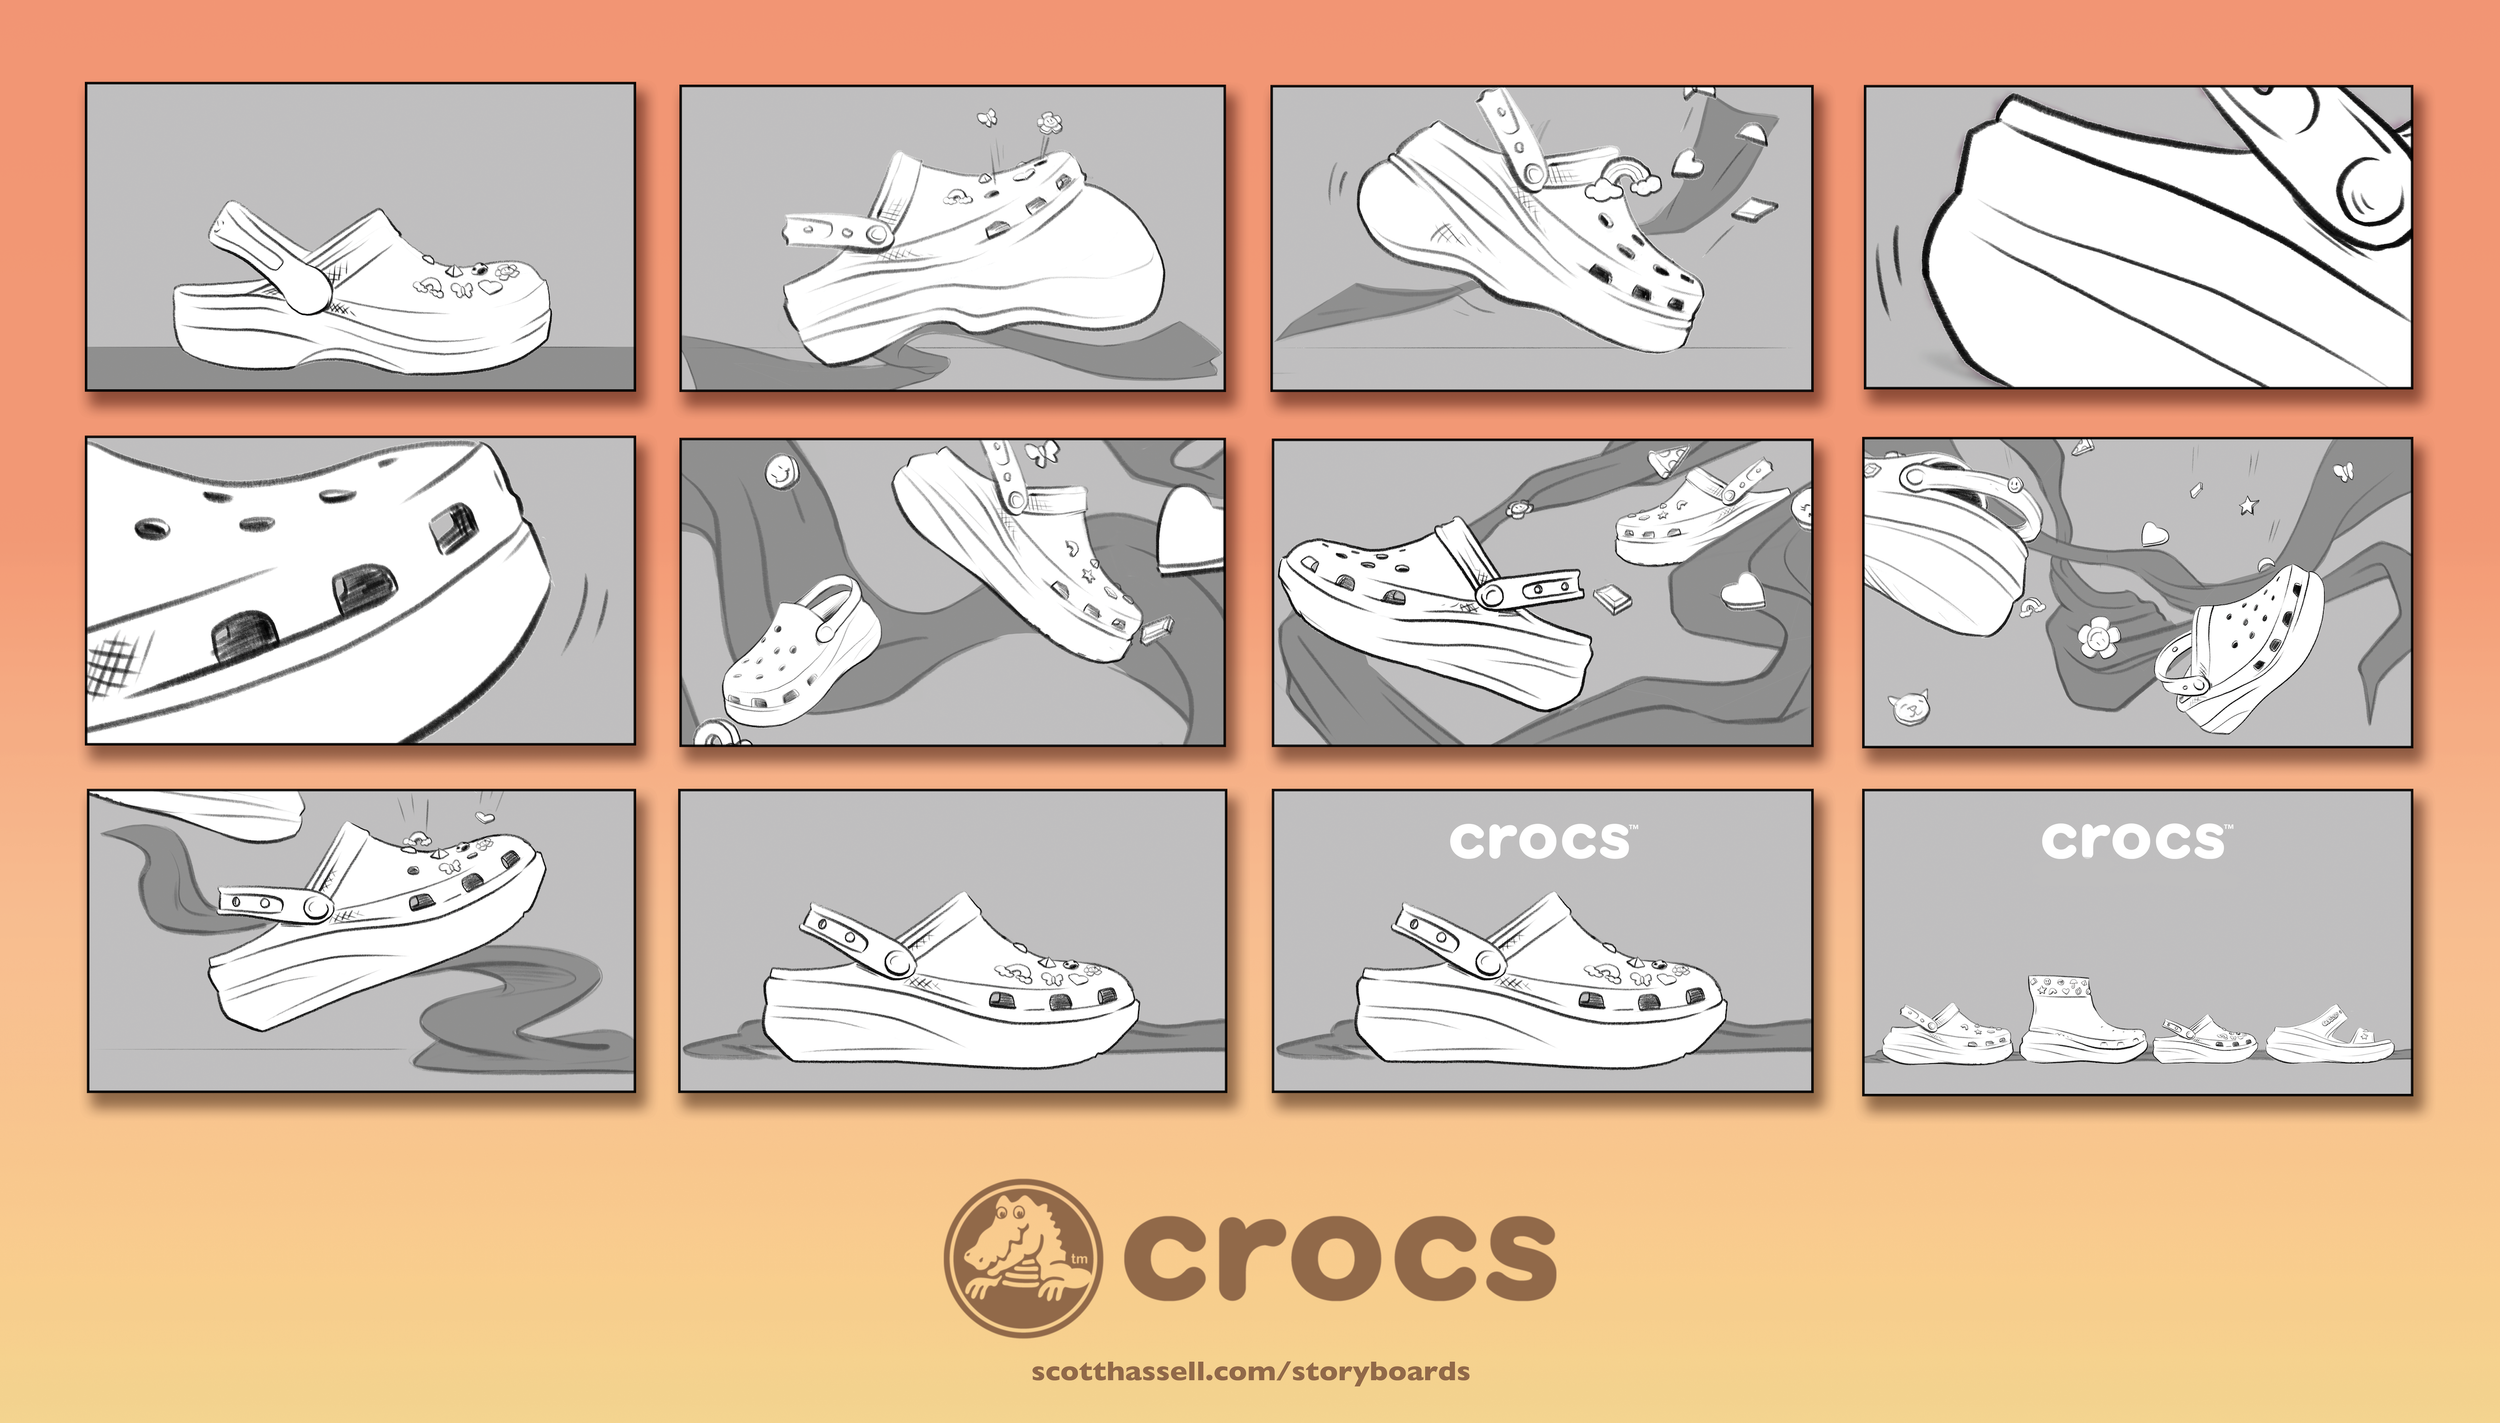 Crocs Cutie storyboards